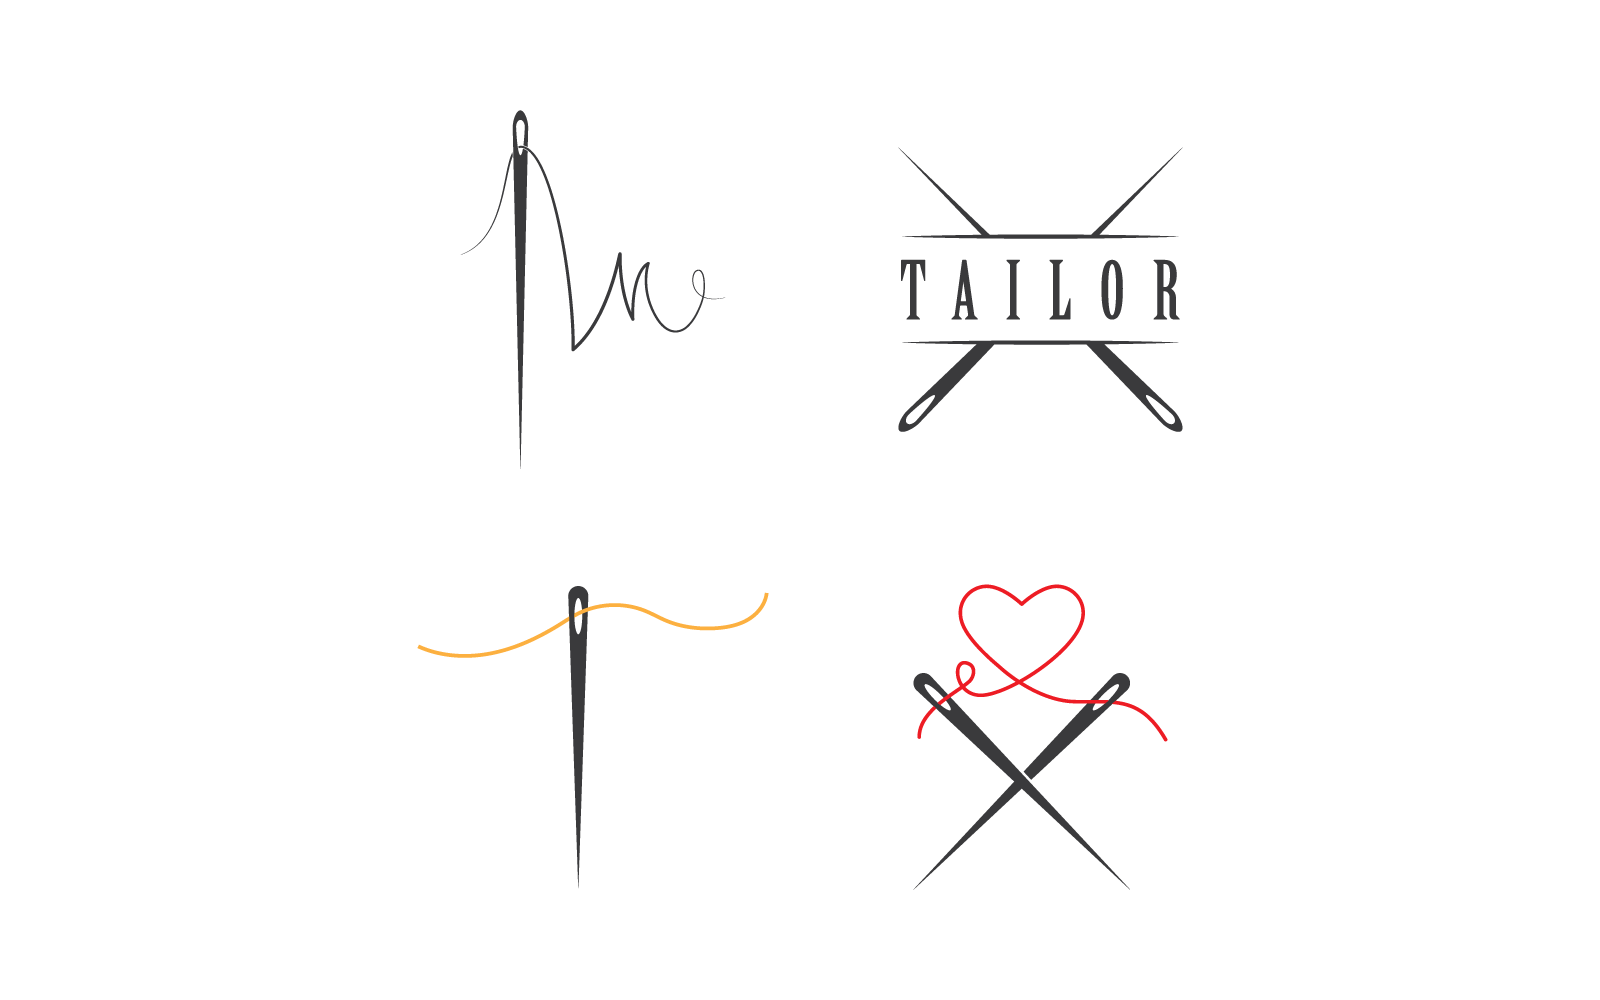 Tailor or textile logo icon vector flat design